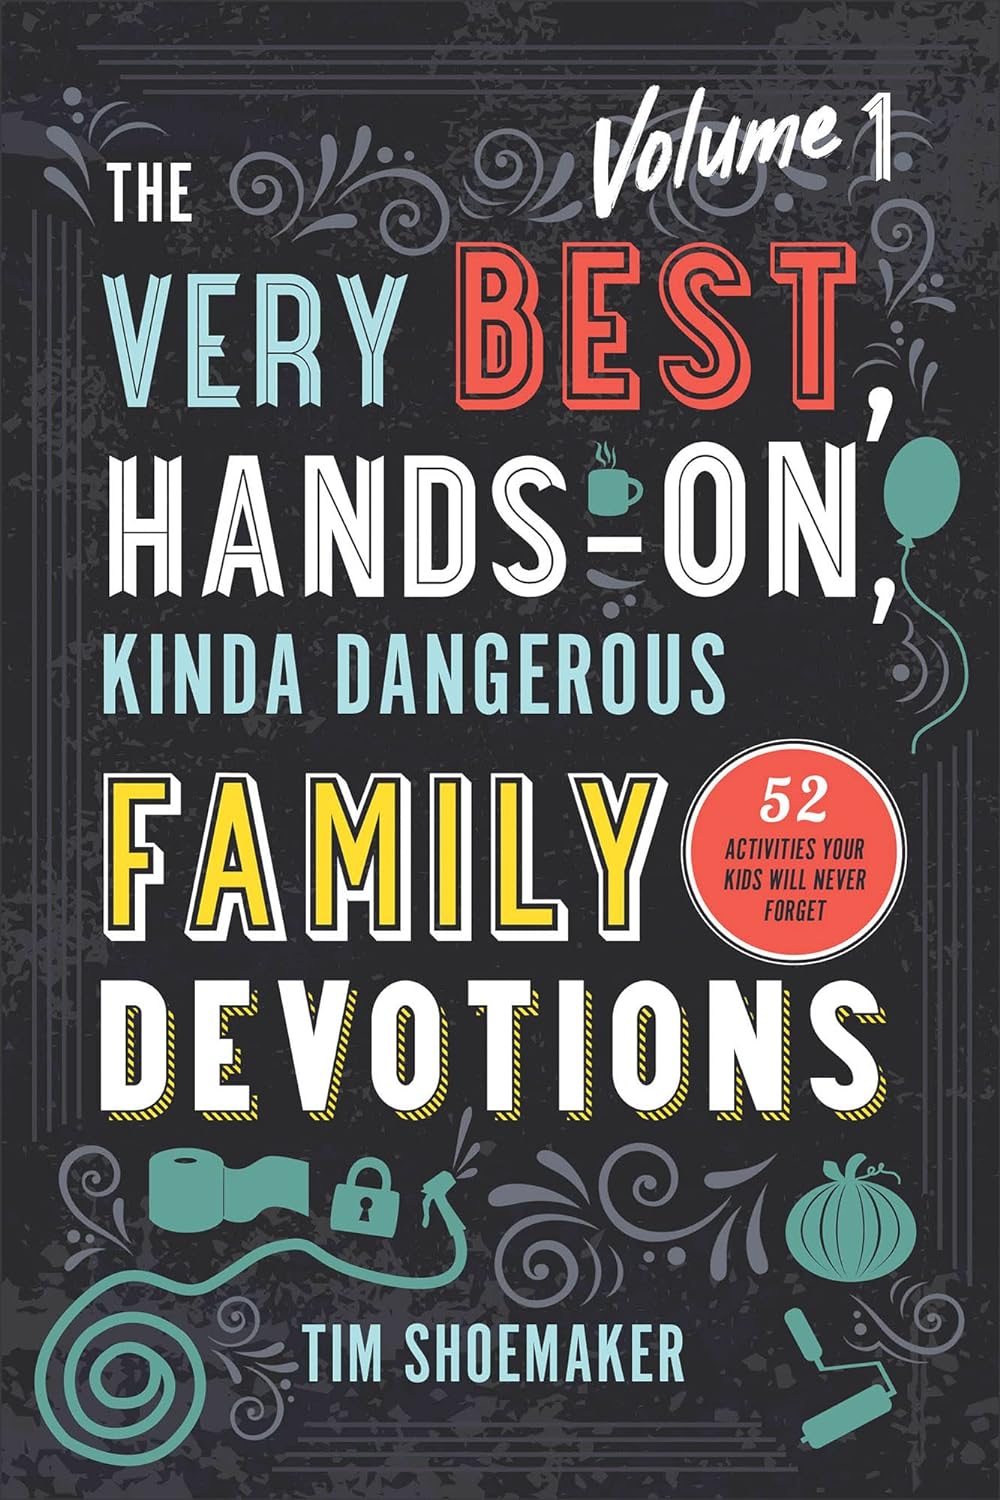 The Very Best, Hands-On, Kinda Dangerous Family Devotions, Volume 1